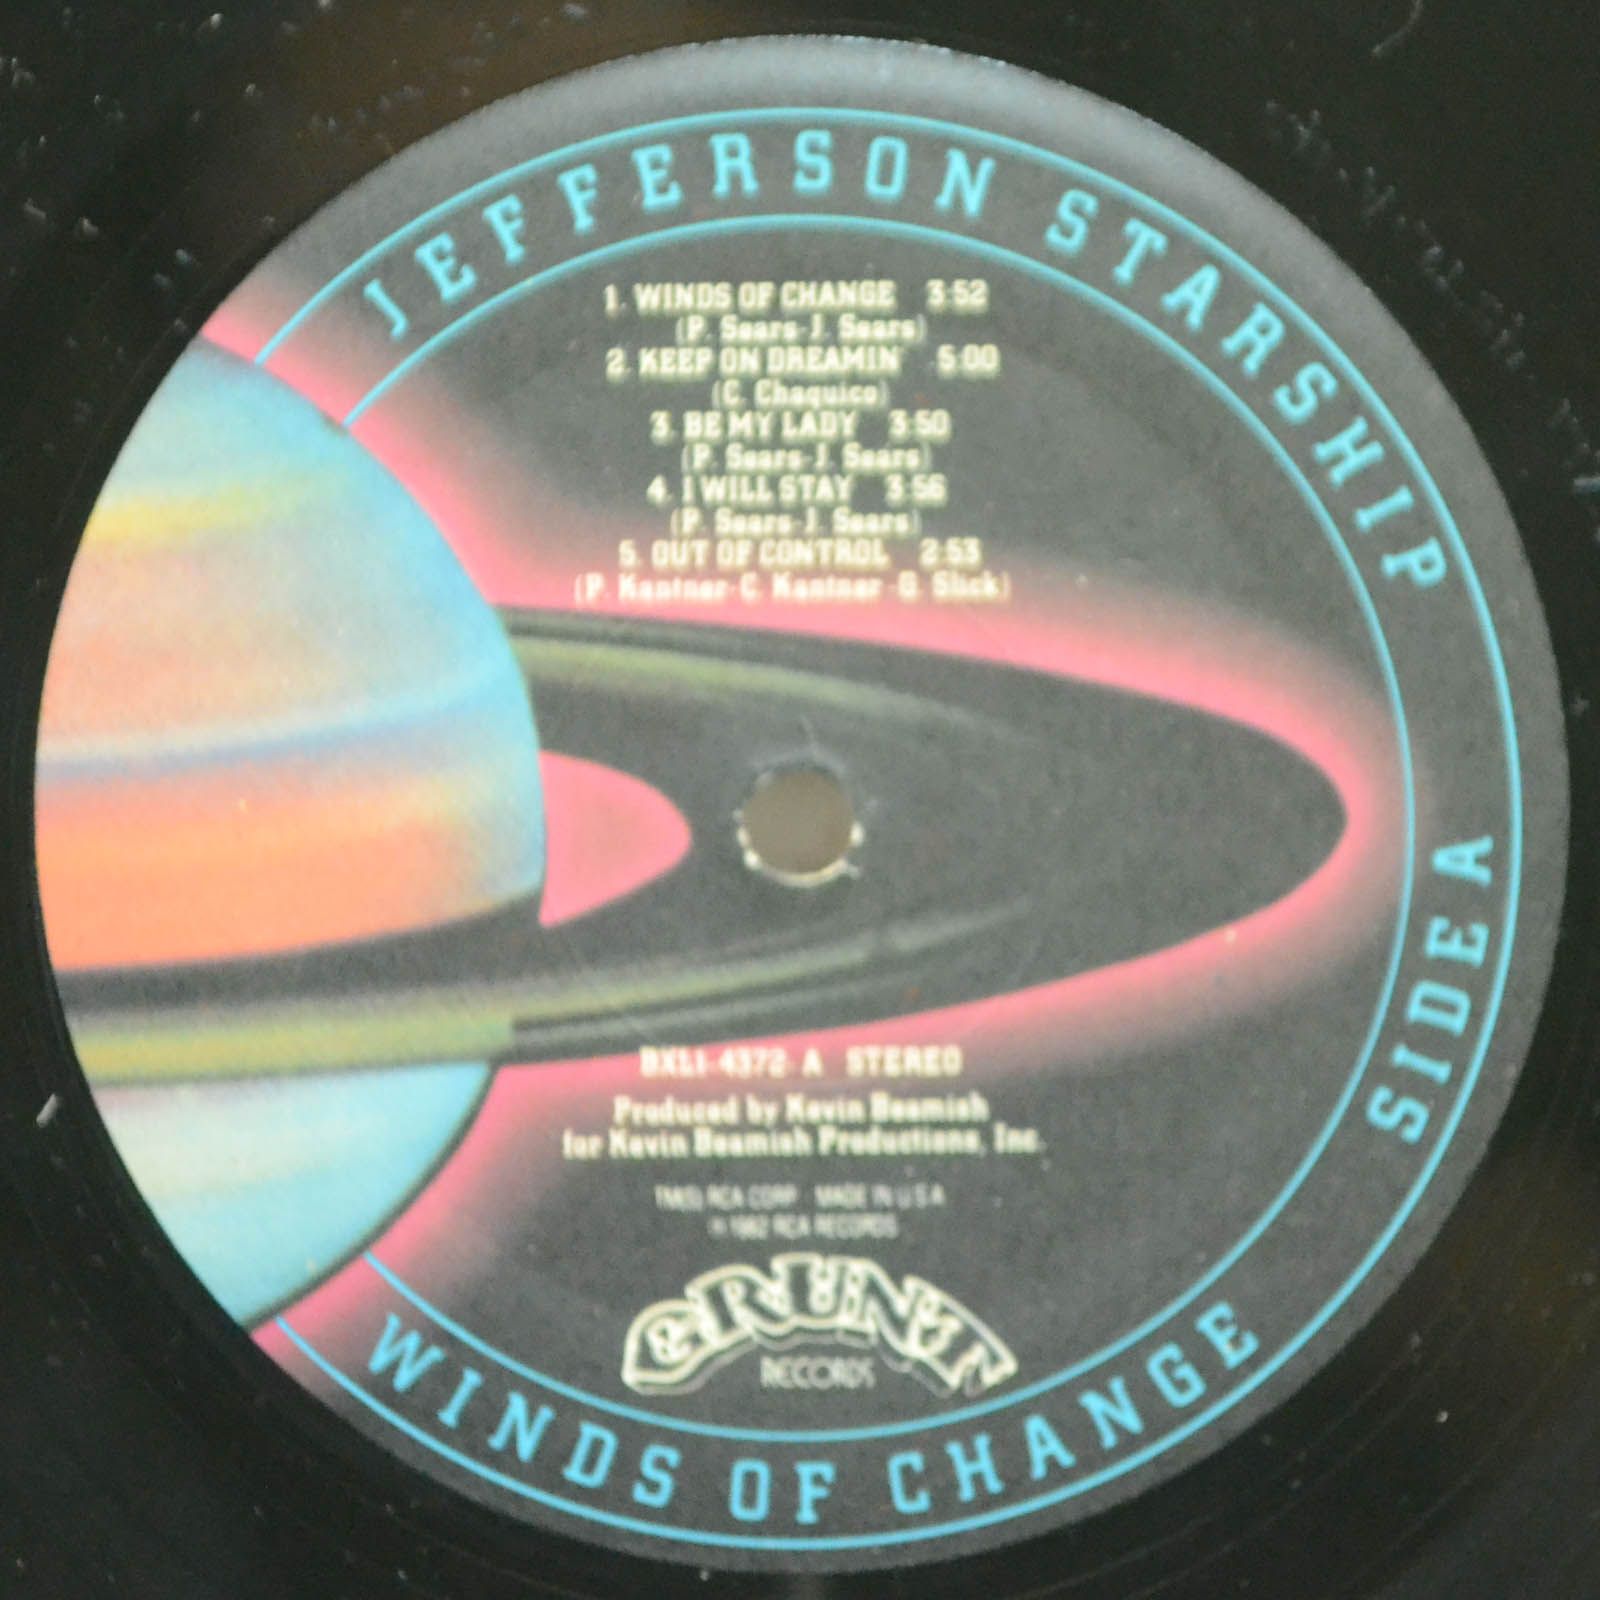 Jefferson Starship — Winds Of Change, 1982